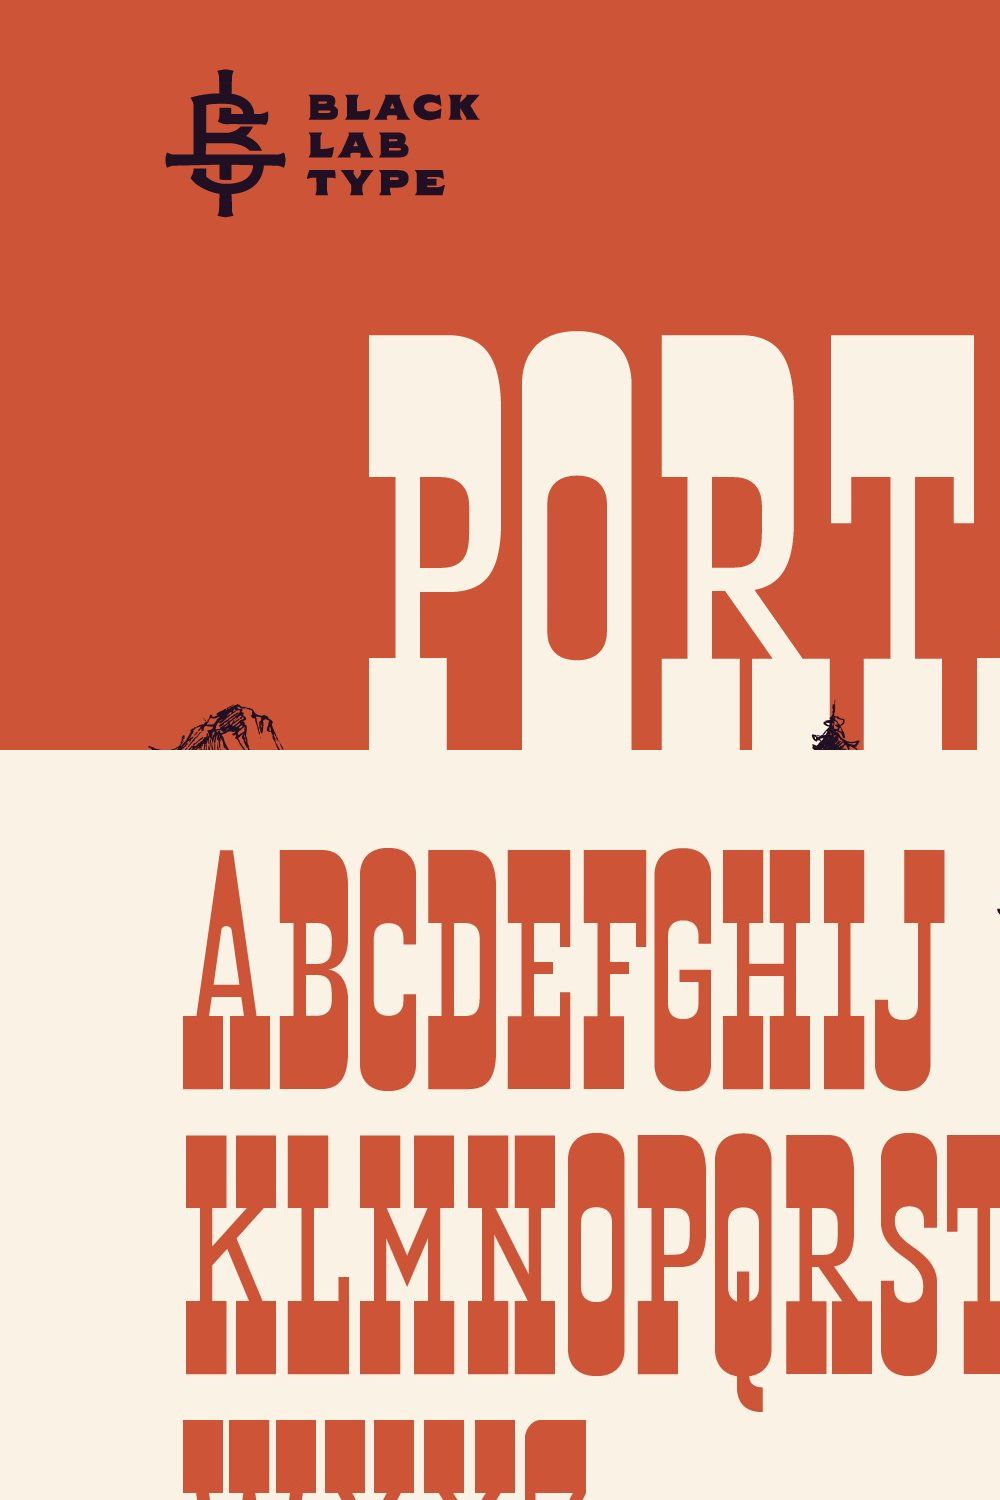 Portage : Adventurous Slab Font pinterest preview image.